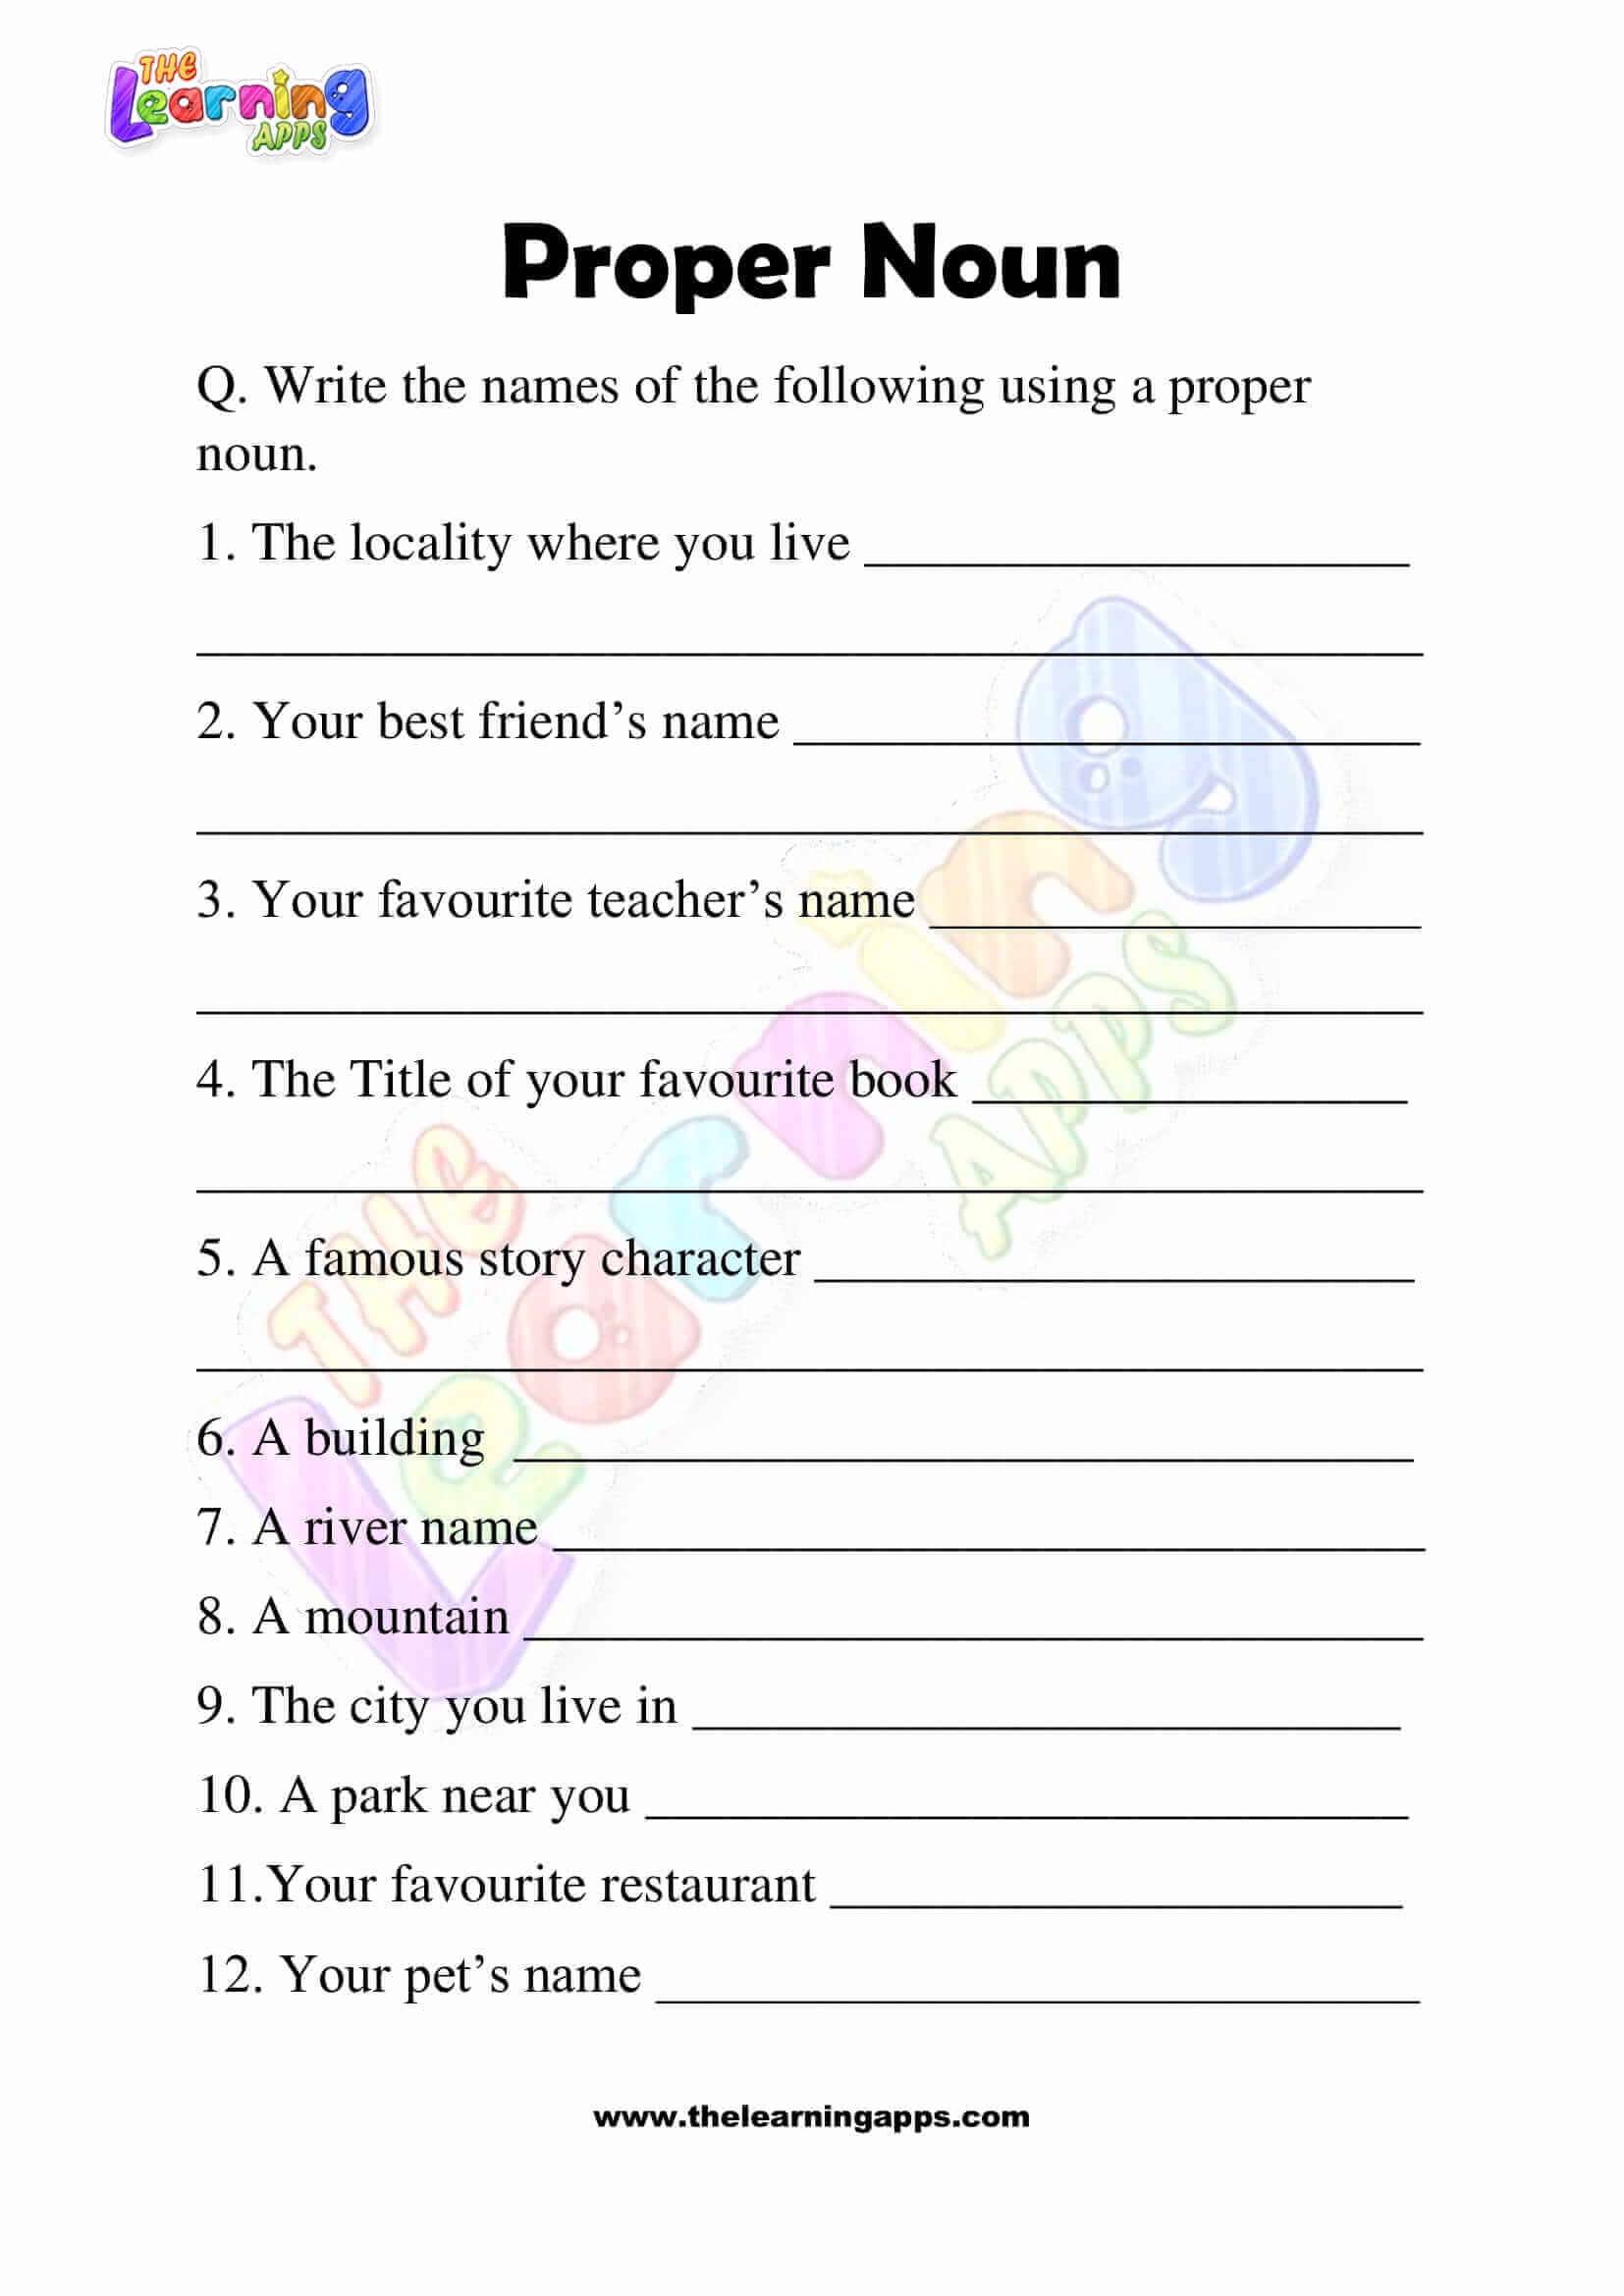 Proper-Noun-Worksheets-Grade-3-Activity-6